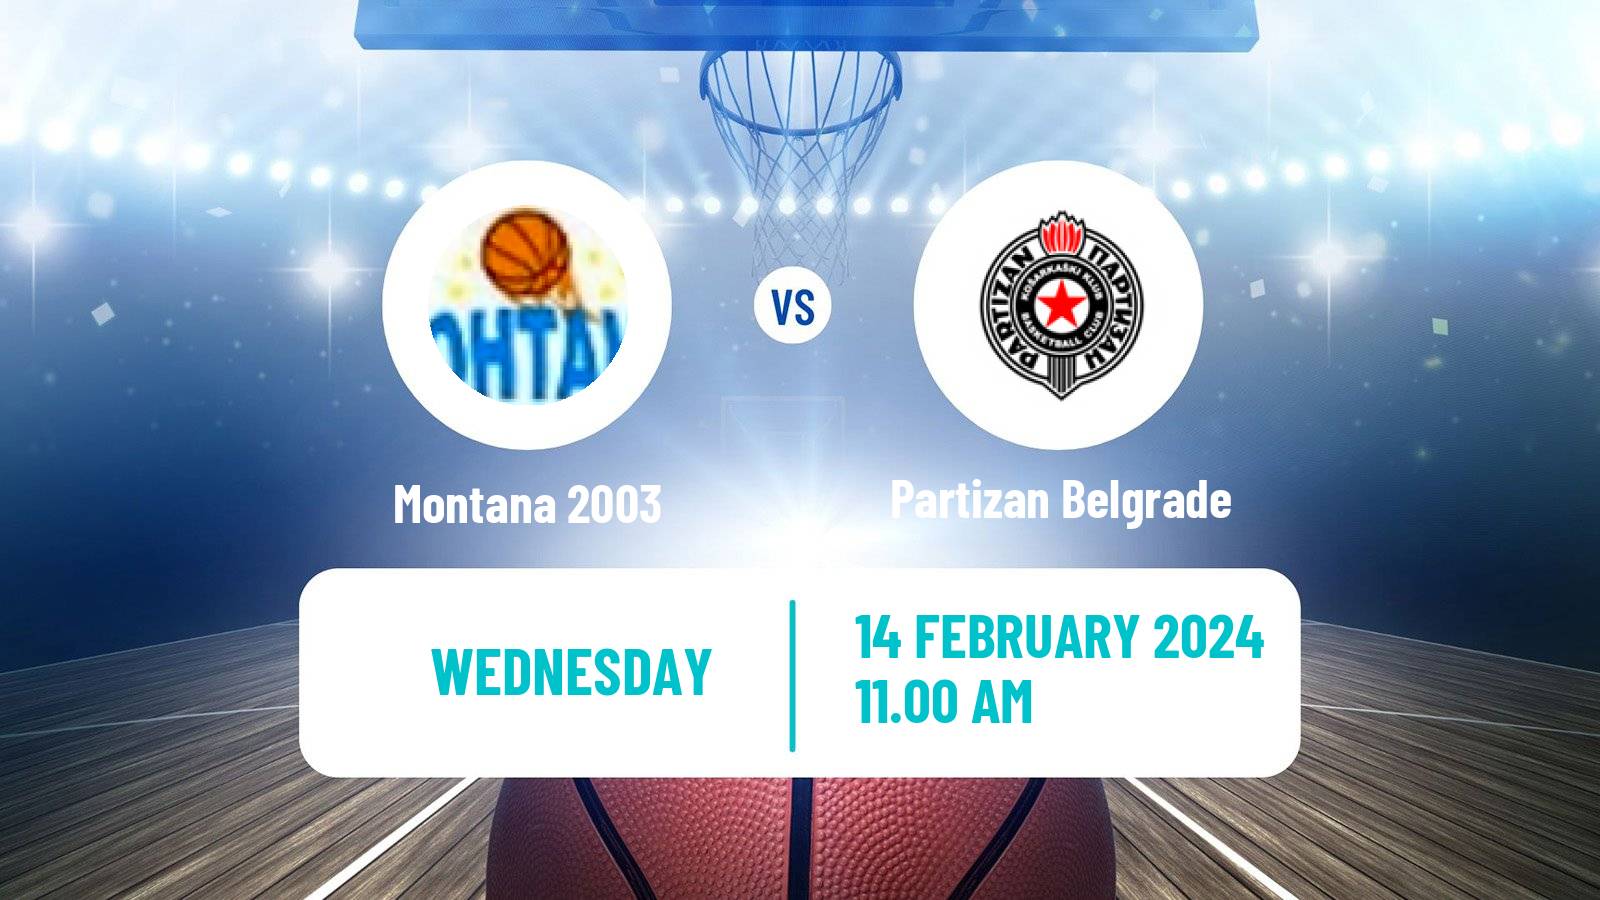 Basketball WABA League Montana 2003 - Partizan Belgrade